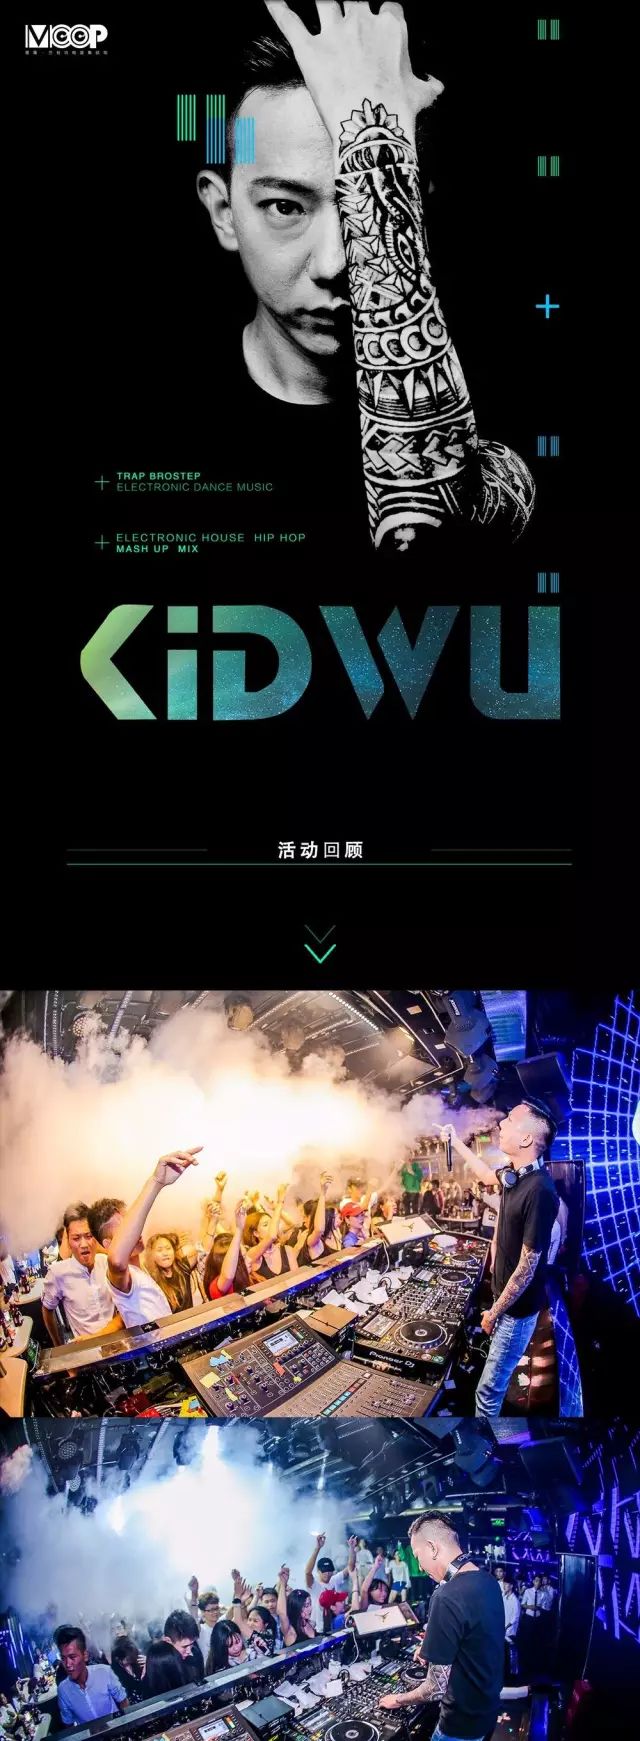 回顾 | DJ KIDWU 电音届创作鬼才 中国制燥第四期-成都墨蒲酒吧/MOOP club